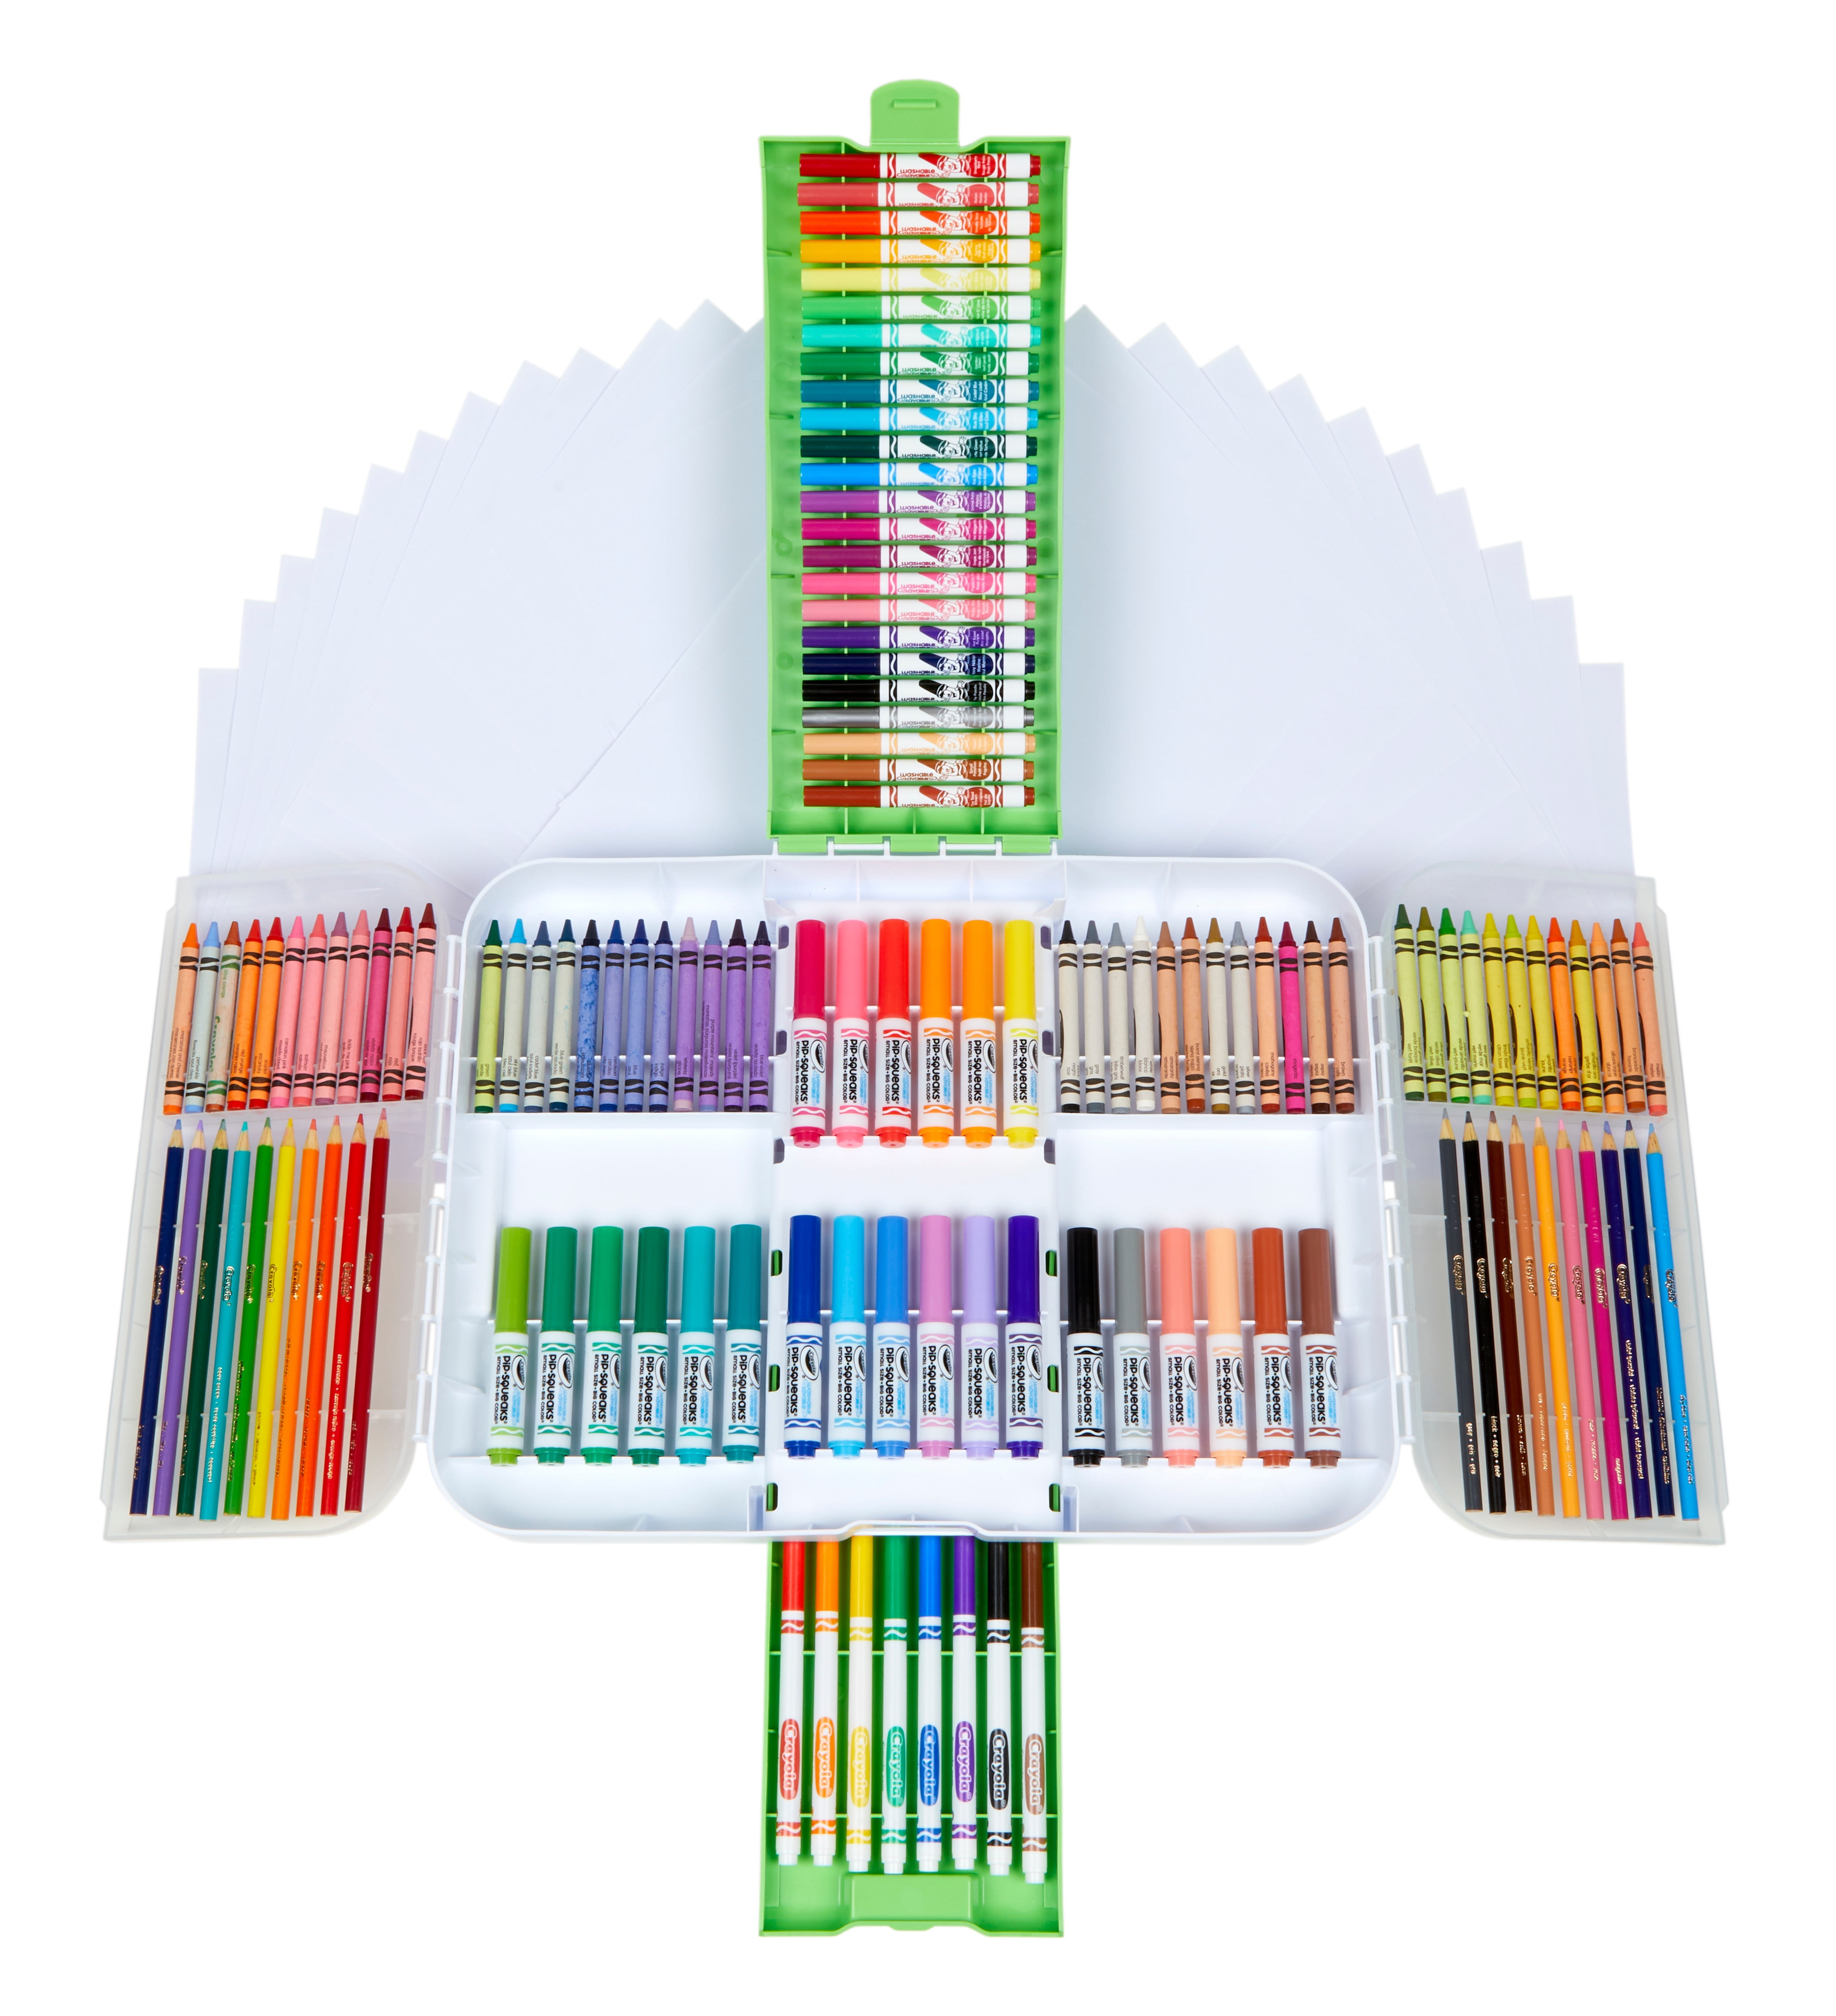 Crayola Art Supply Kit – Make & Mend